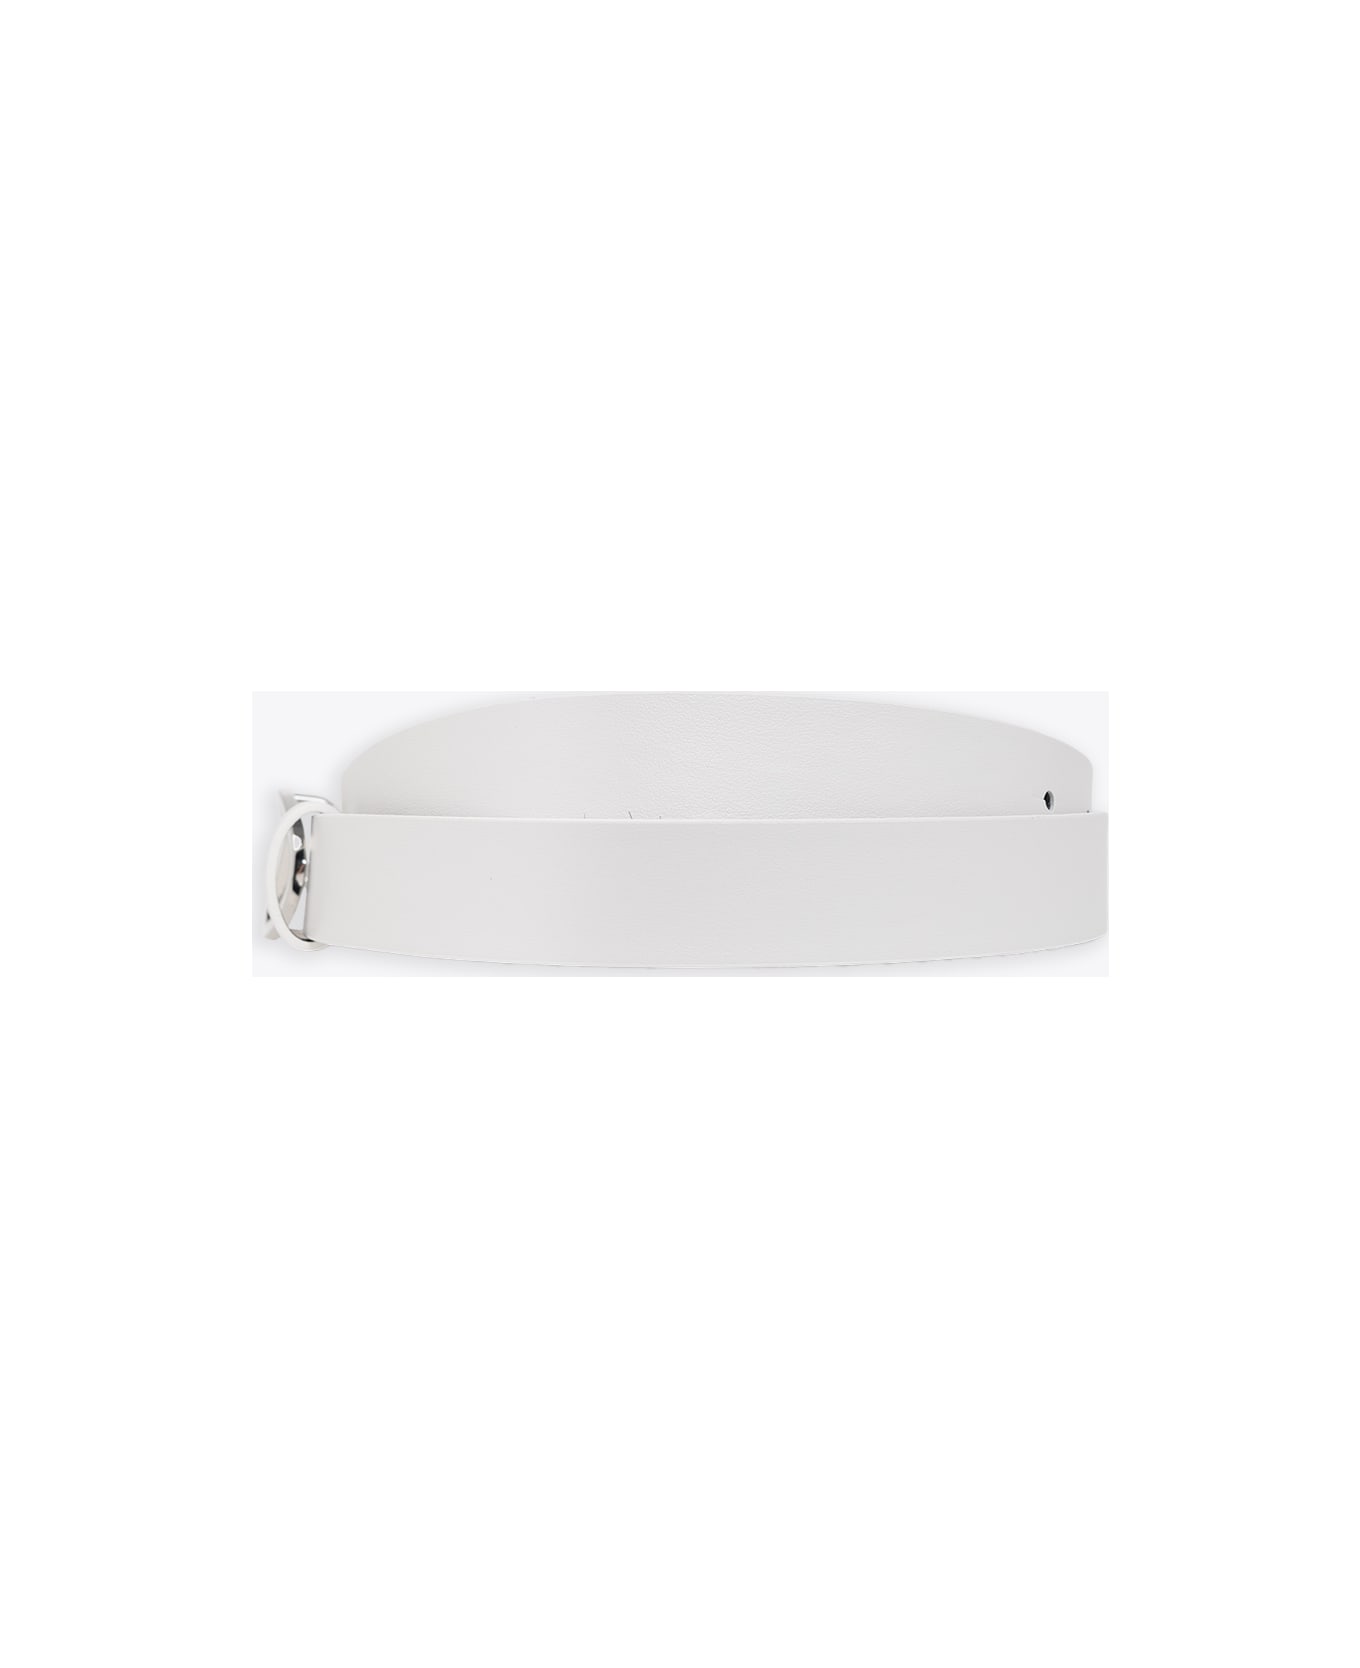 Diesel Oval D Logo B-1dr 25 Belt White Leather Belt With Oval-d Buckle - B-1dr 25 Belt - Bianco